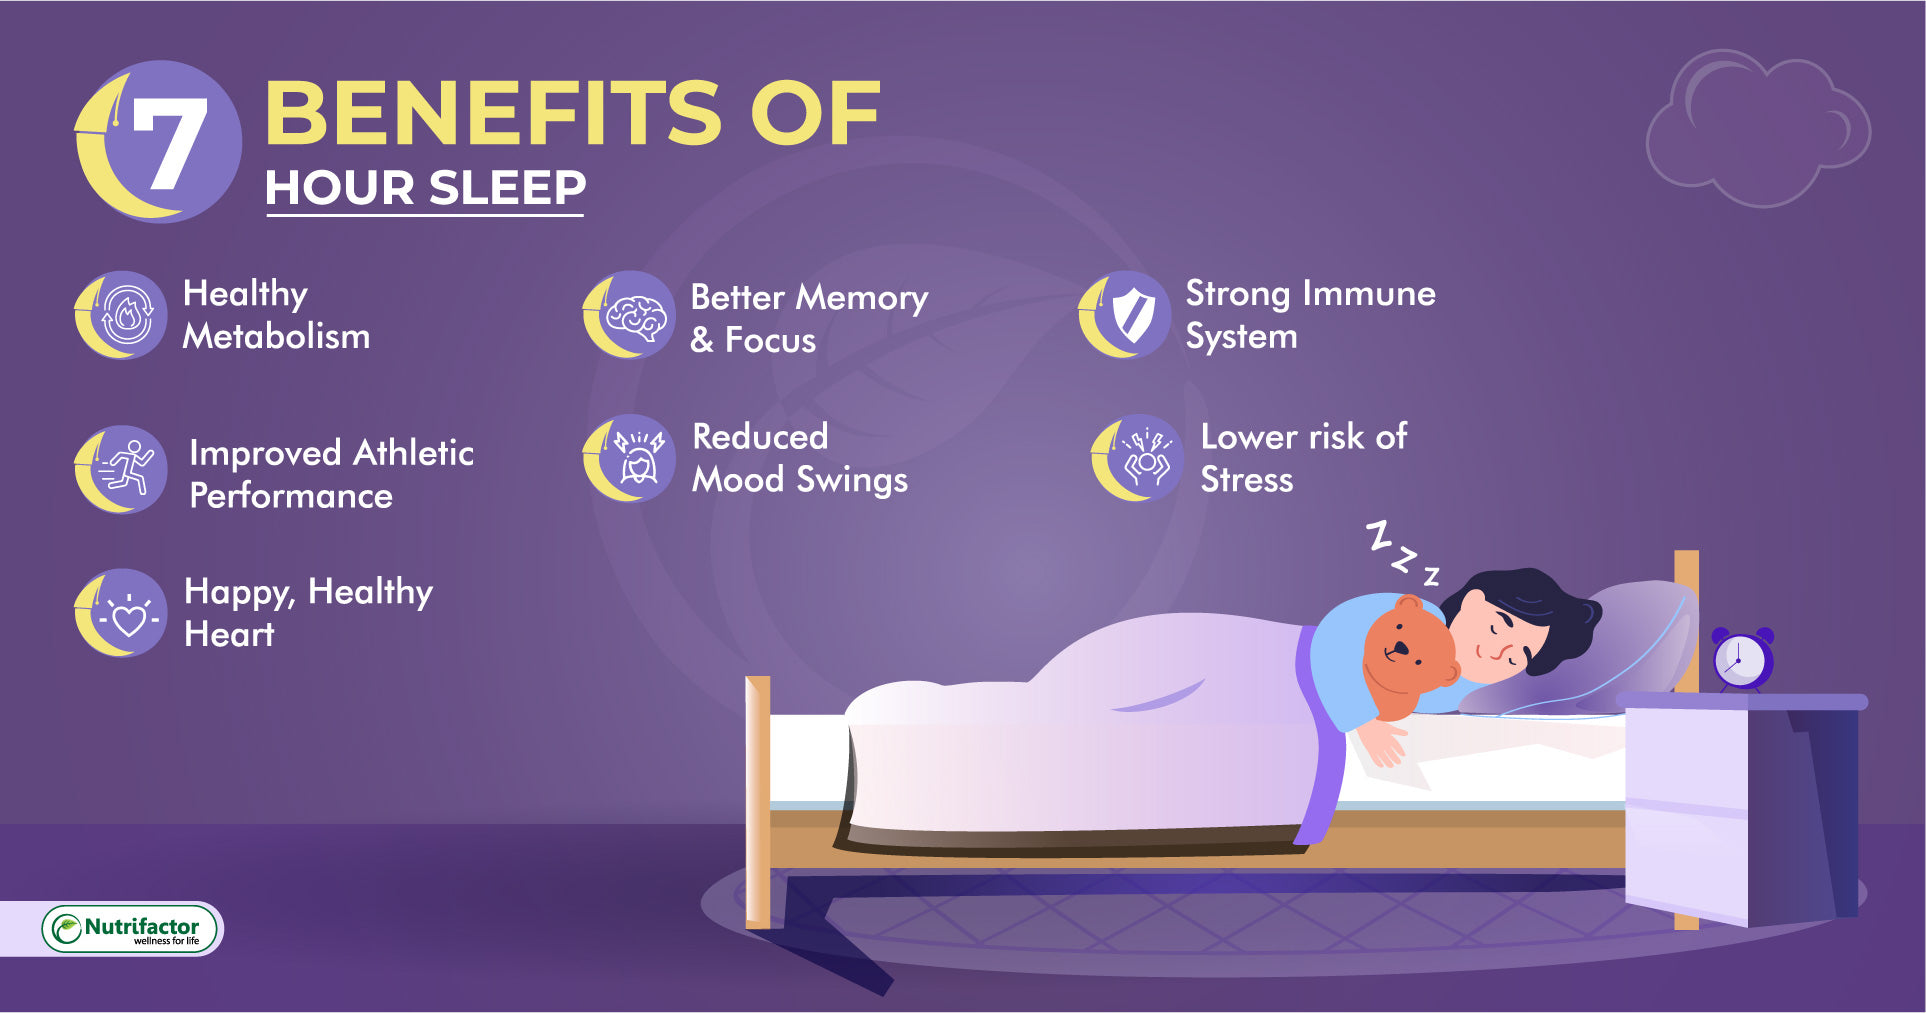 5 Science Based Tips For Better Sleep Nutrifactor 